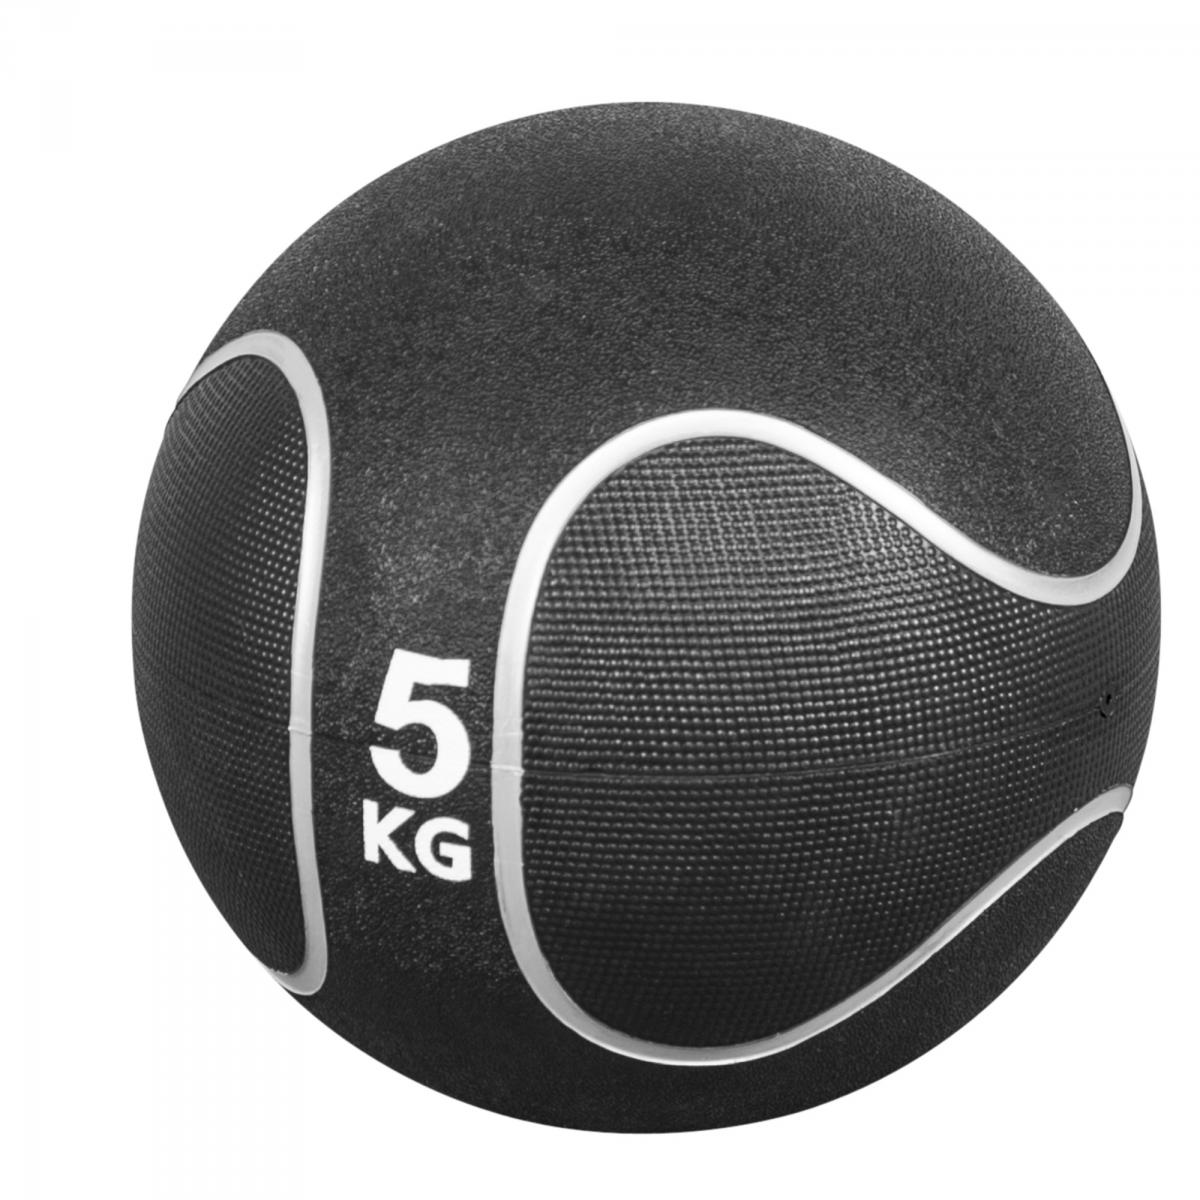 Médecine ball style noir/gris de 5 KG diamètre 23cm